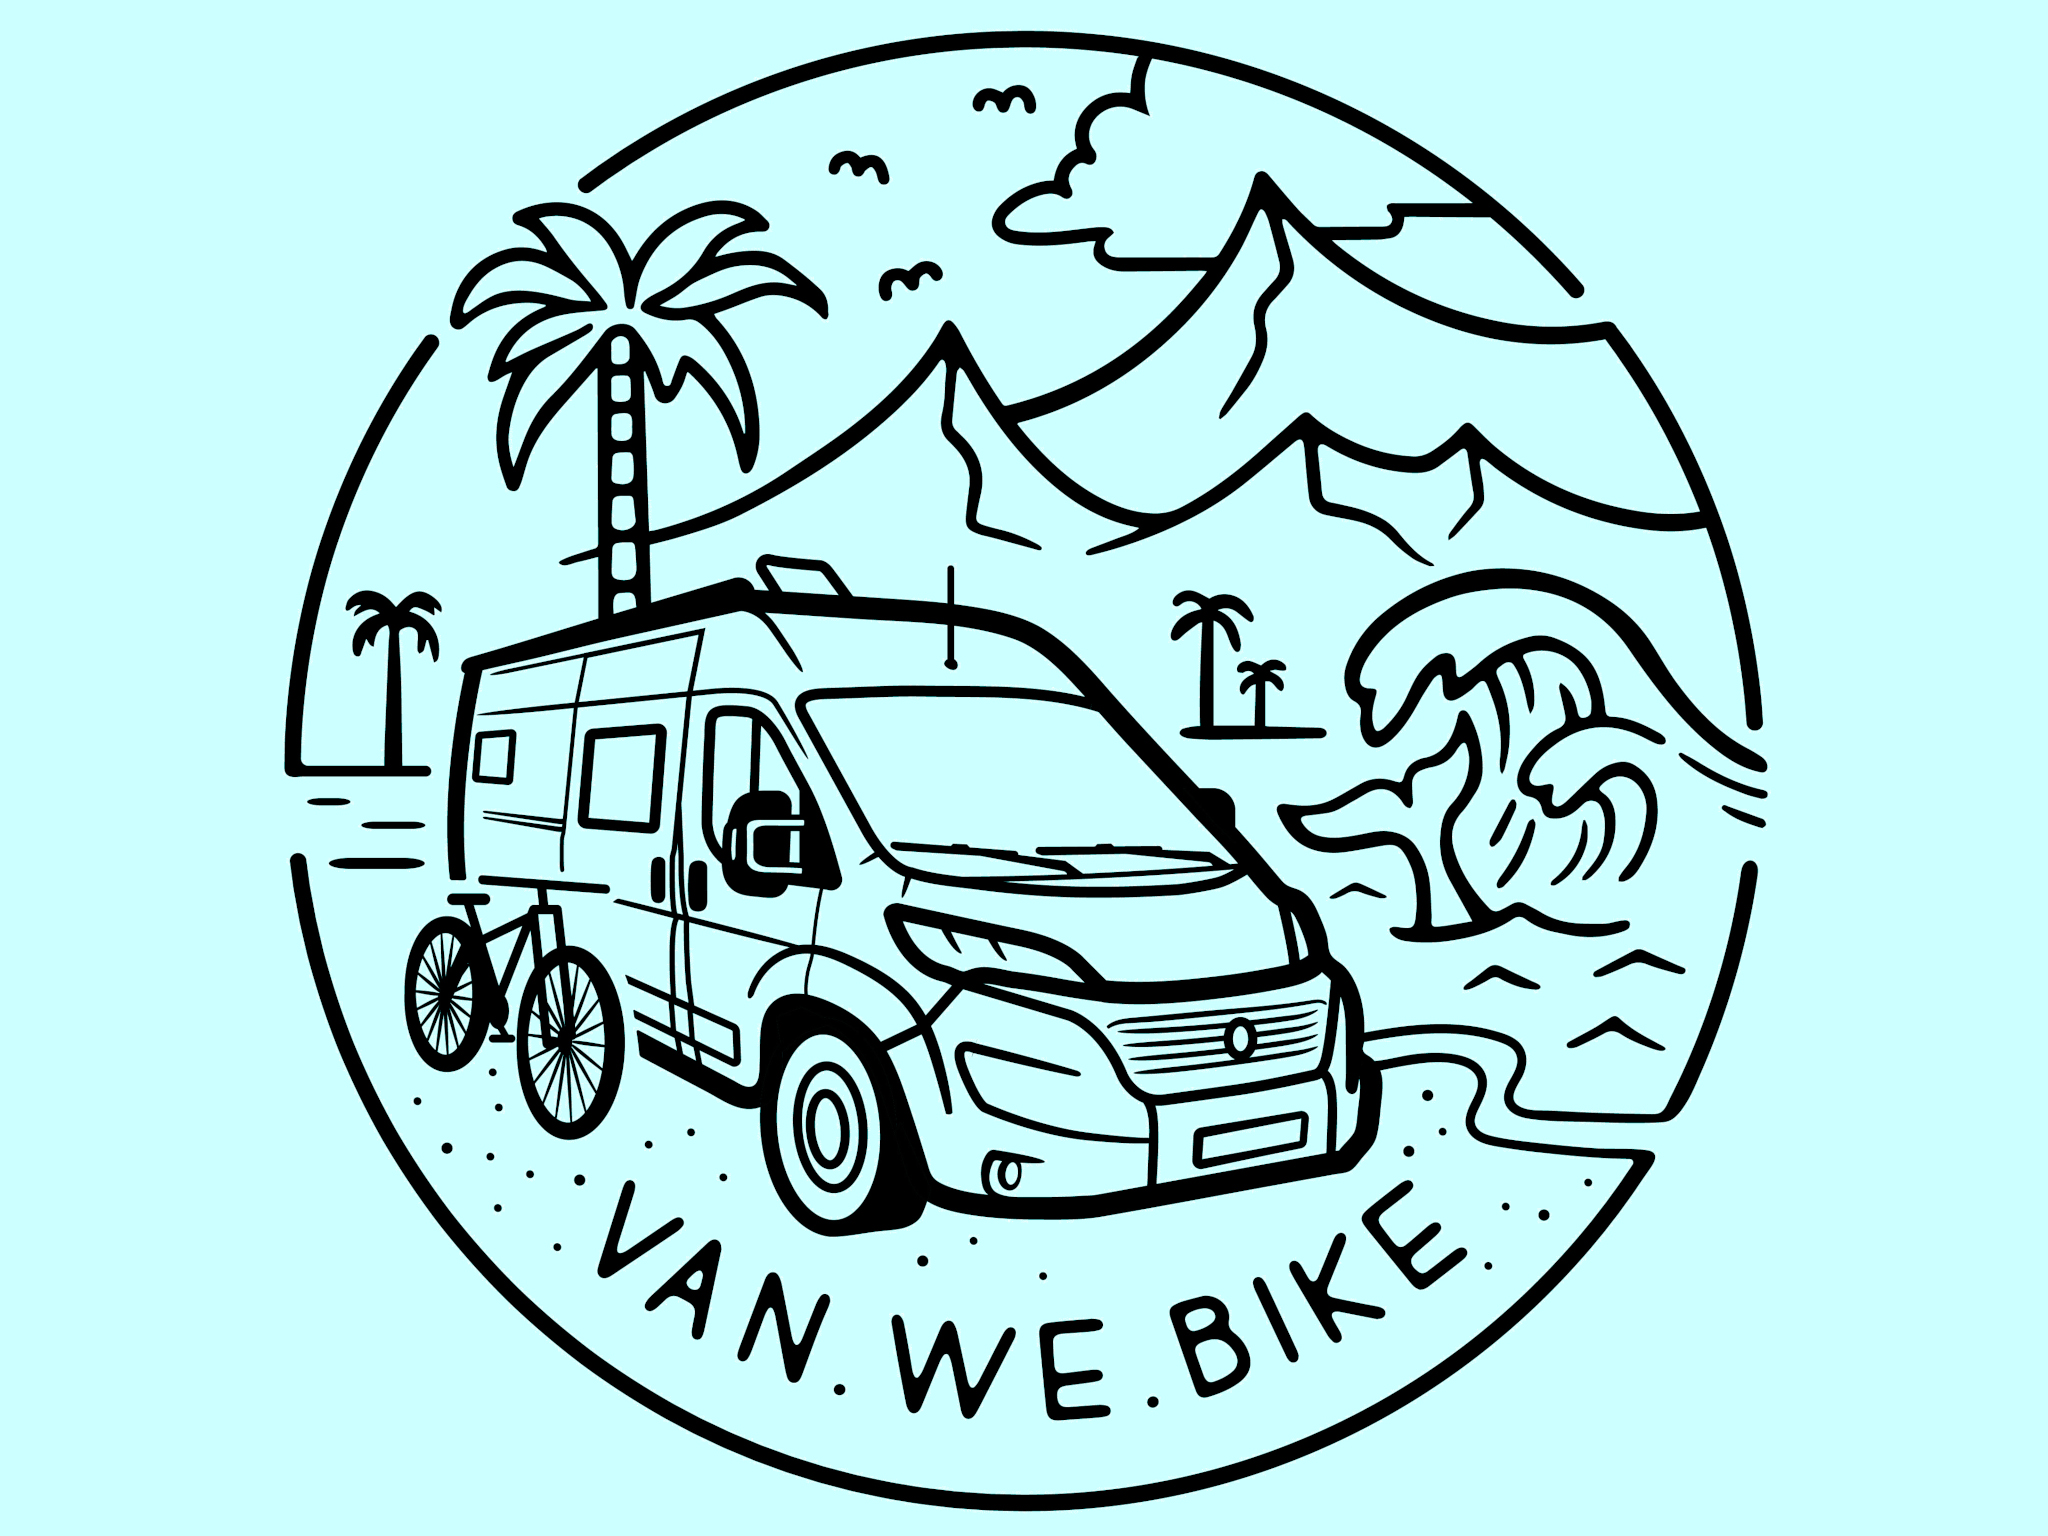 Van.We.Bike